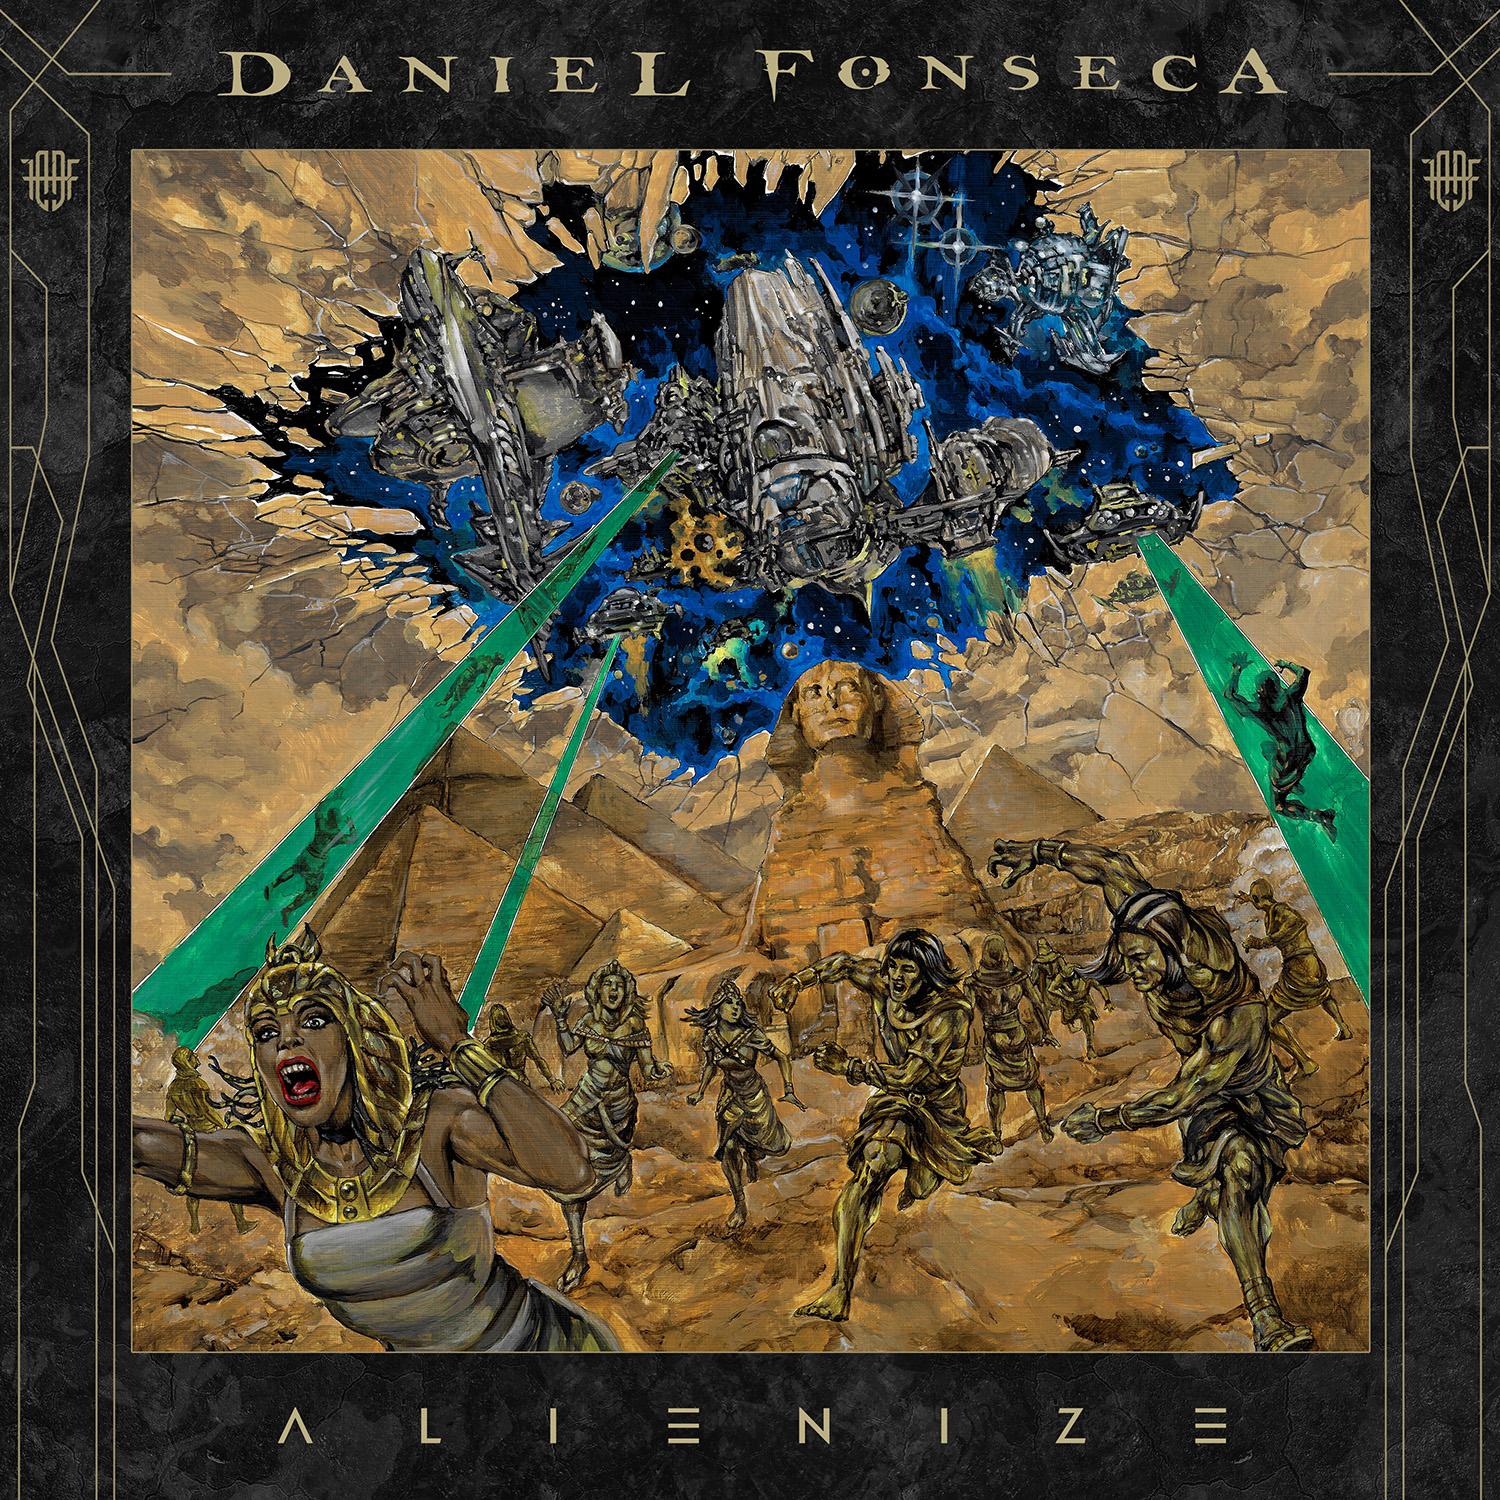 Daniel Fonseca lança EP “Alienize” e videoclipe de faixa-título; ouça e assista